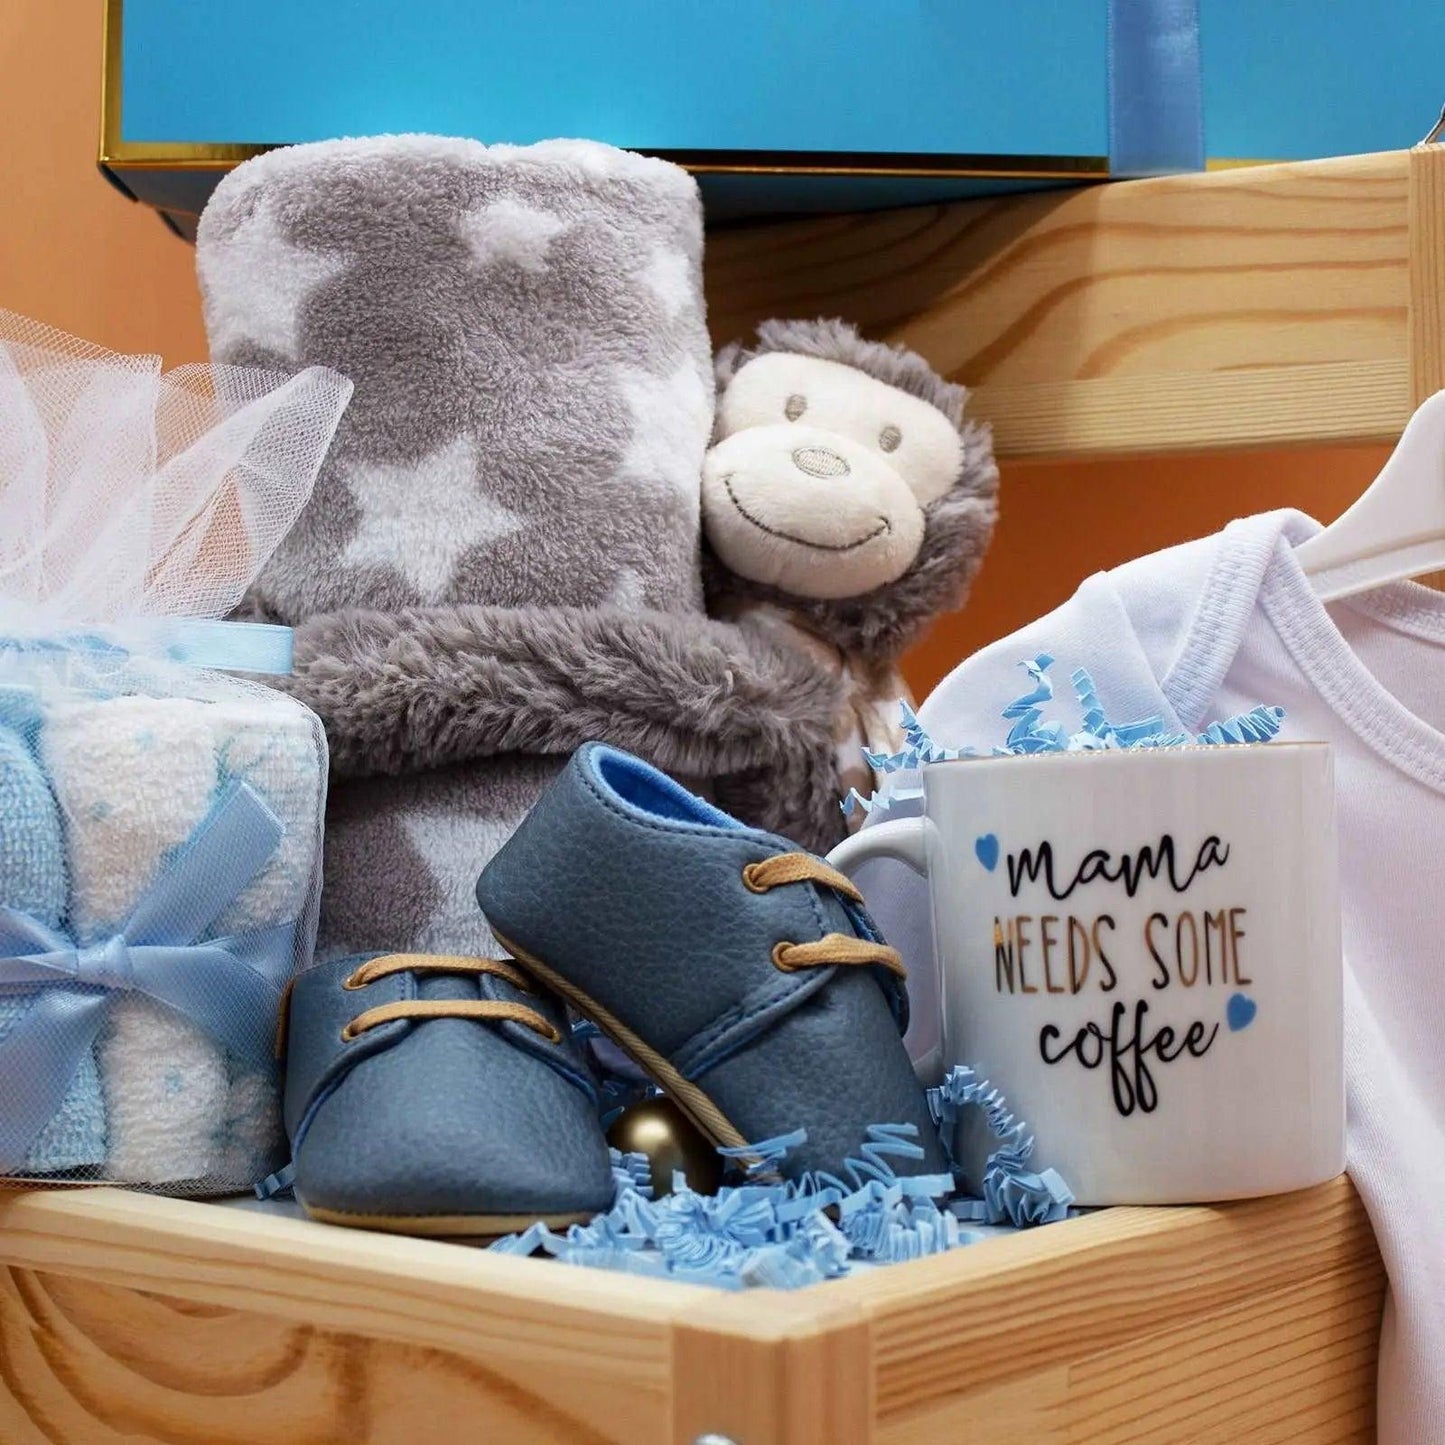 Hellobox Geschenke für neugeborene mit Babydecke, Kuscheltier (17 Teile) (Blau/Weiss/Grau) Junge helloboxshop